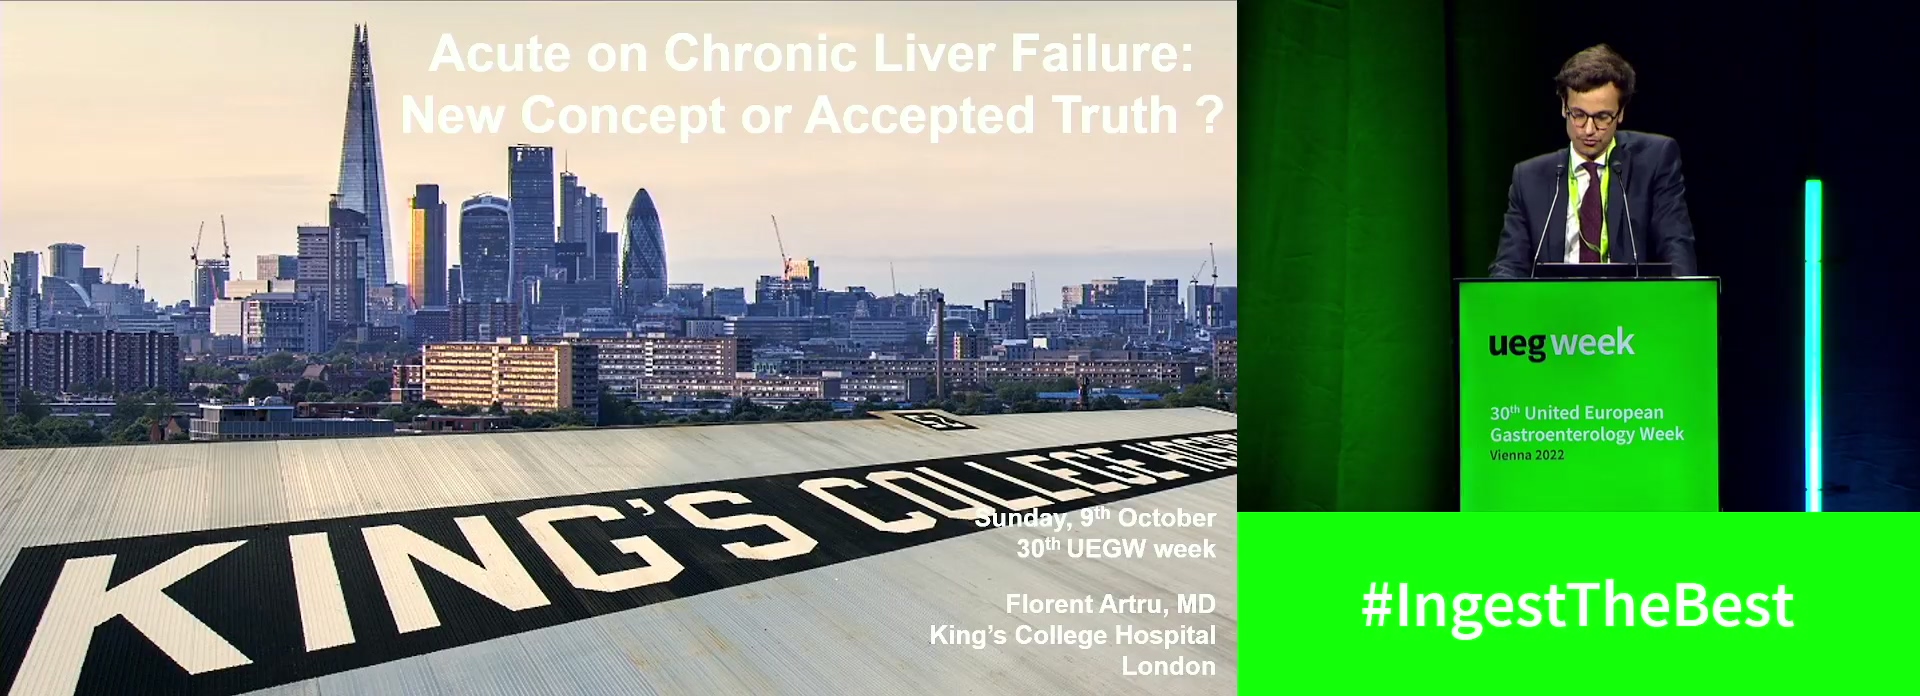 Acute on chronic liver failure: Still a novel concept or accepted truth?